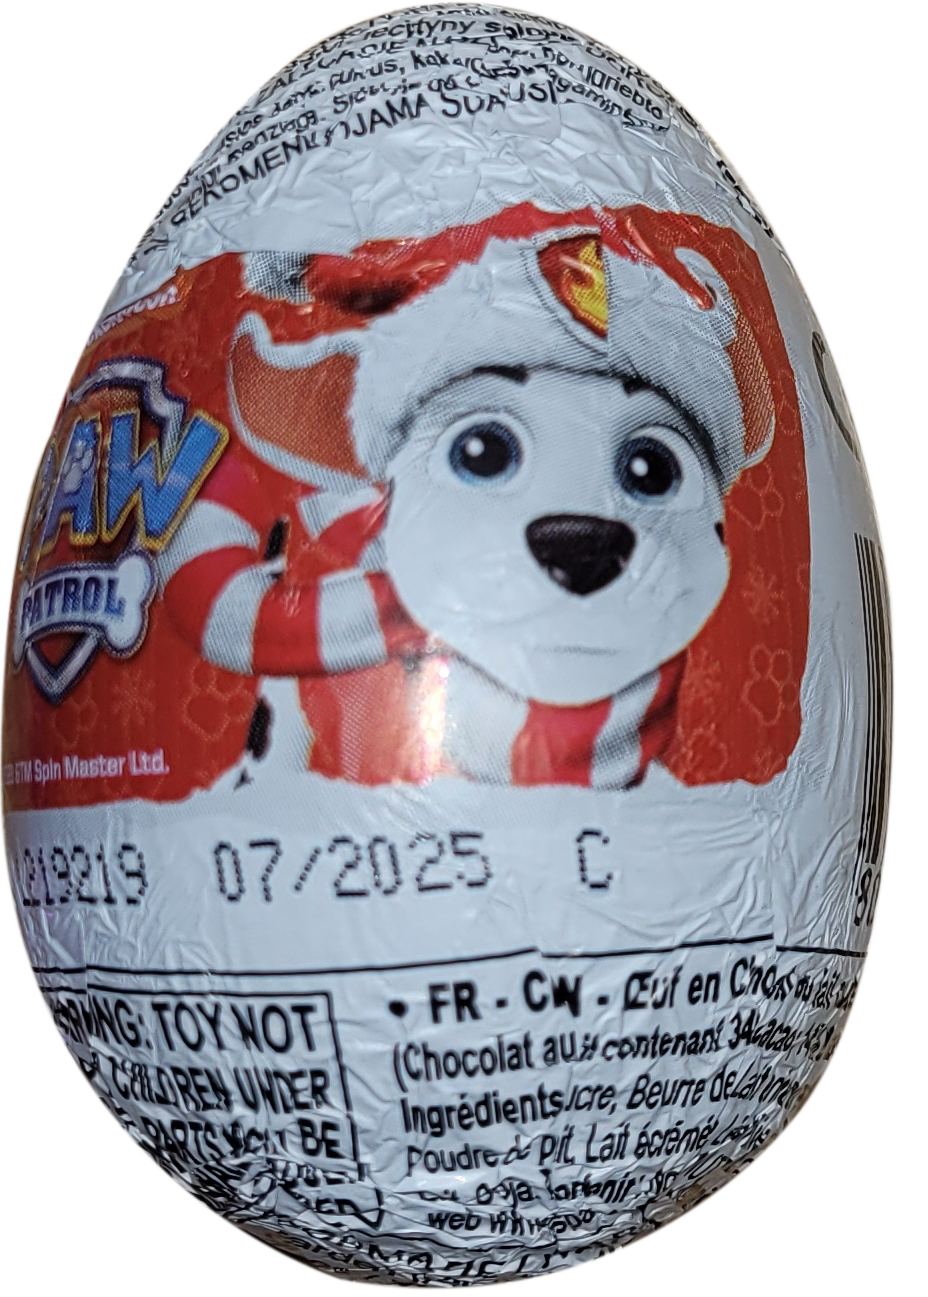 Zaini - Paw Patrol - Christmas Surprise Chocolate Eggs - 20g